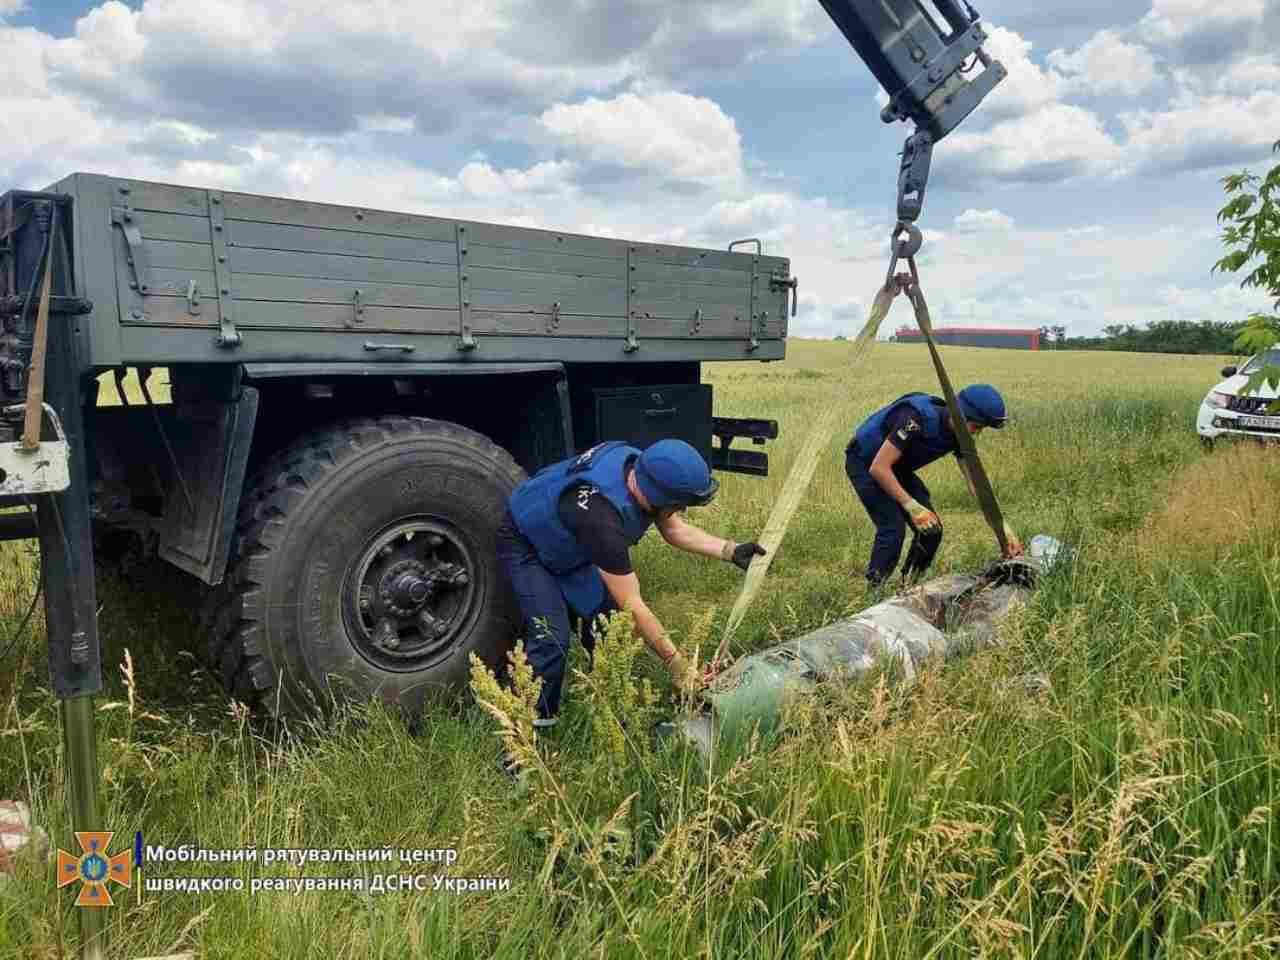 رجال إنقاذ أوكرانيون يبطلون شظية صاروخ بوك